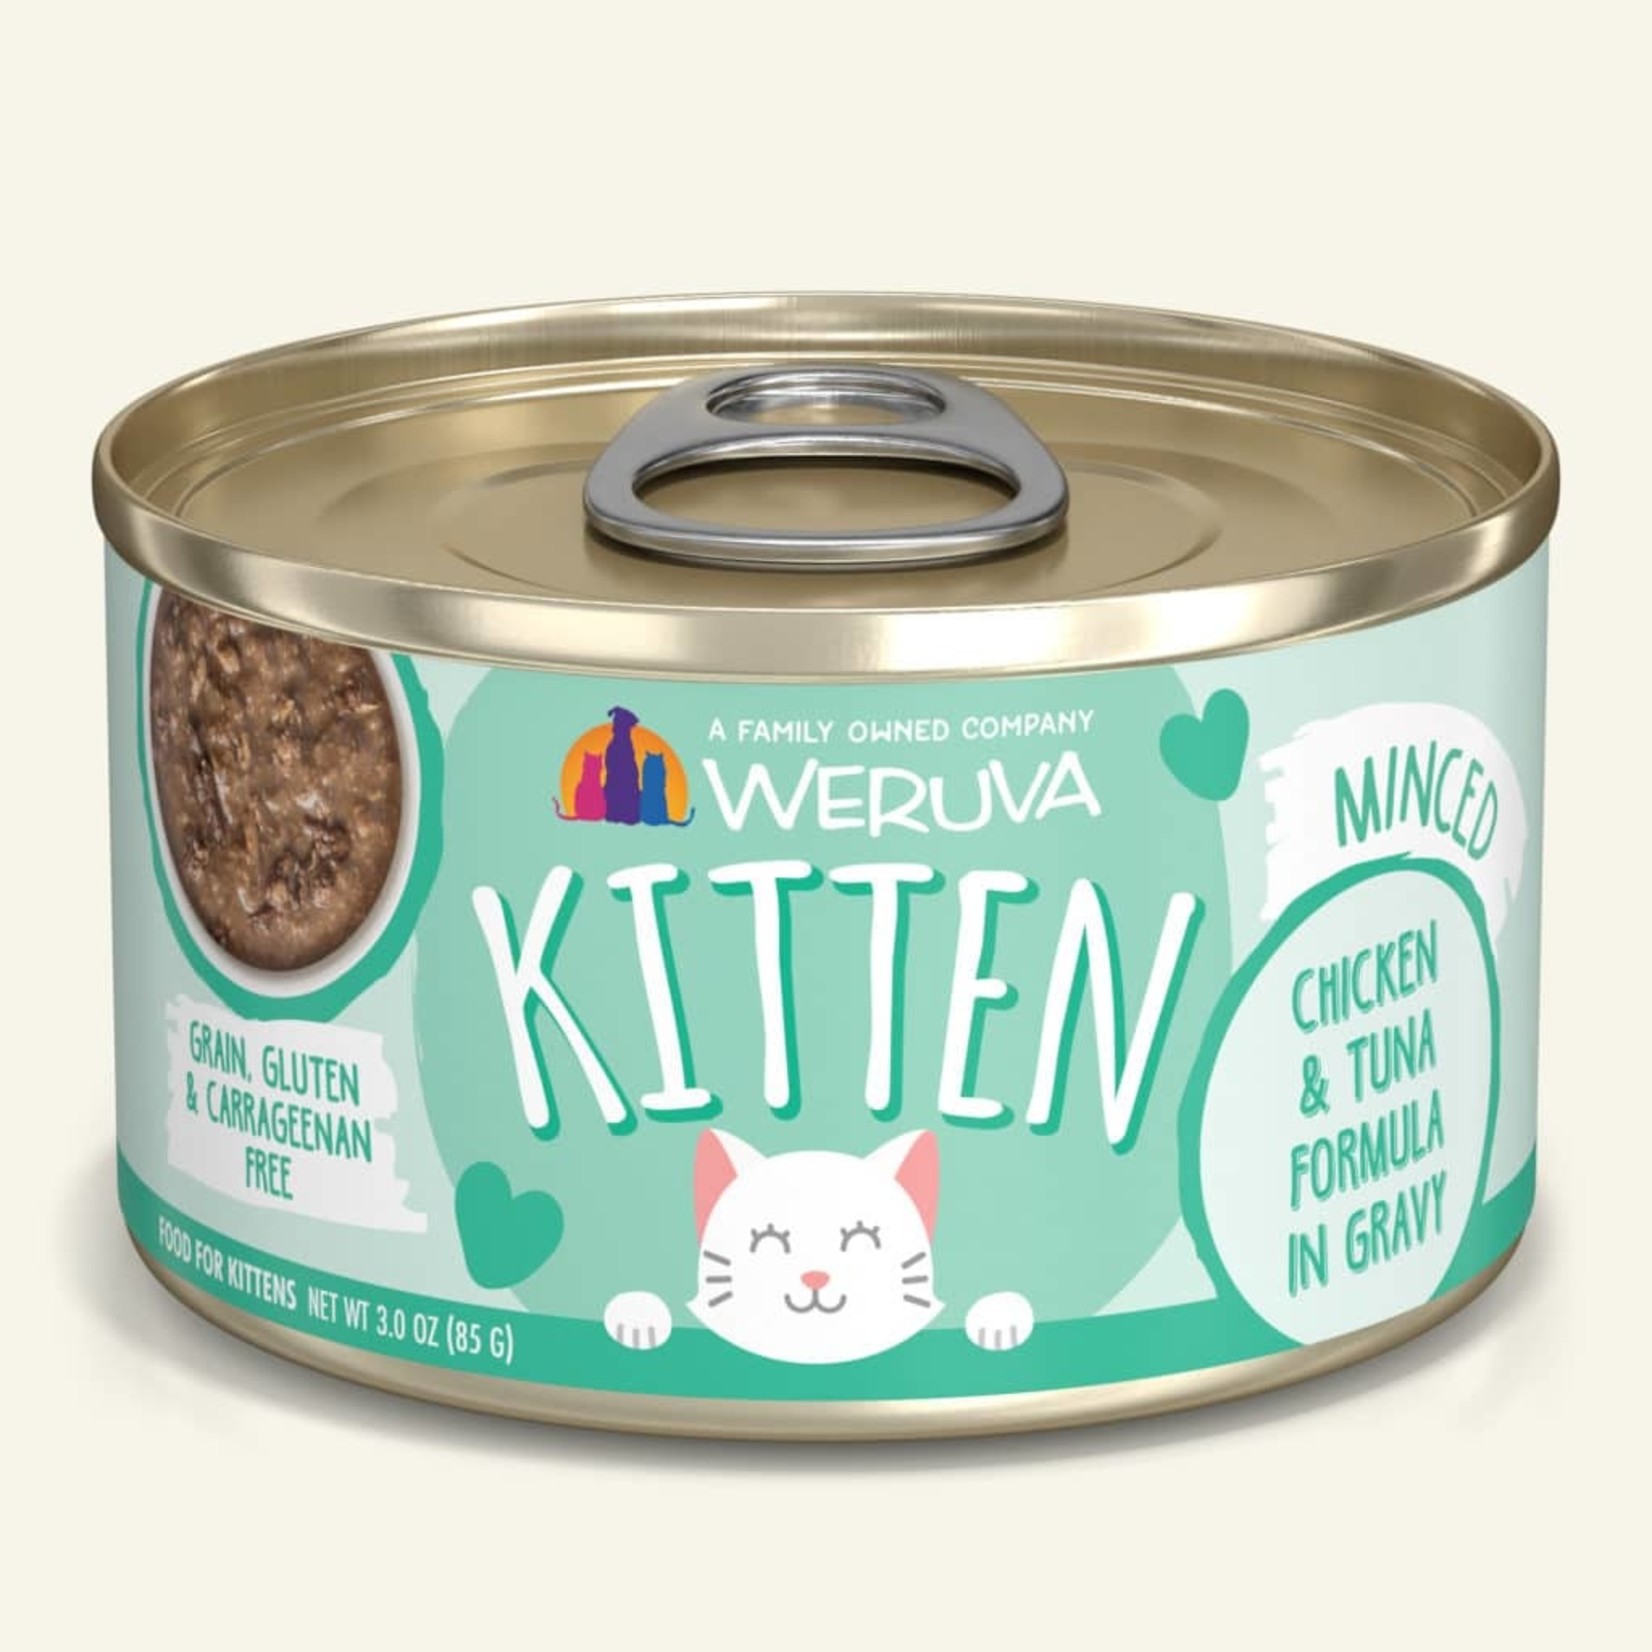 Weruva Weruva Kitten Wet Cat Food Chicken and Tuna Formula in Gravy 3.0oz Can Grain Free